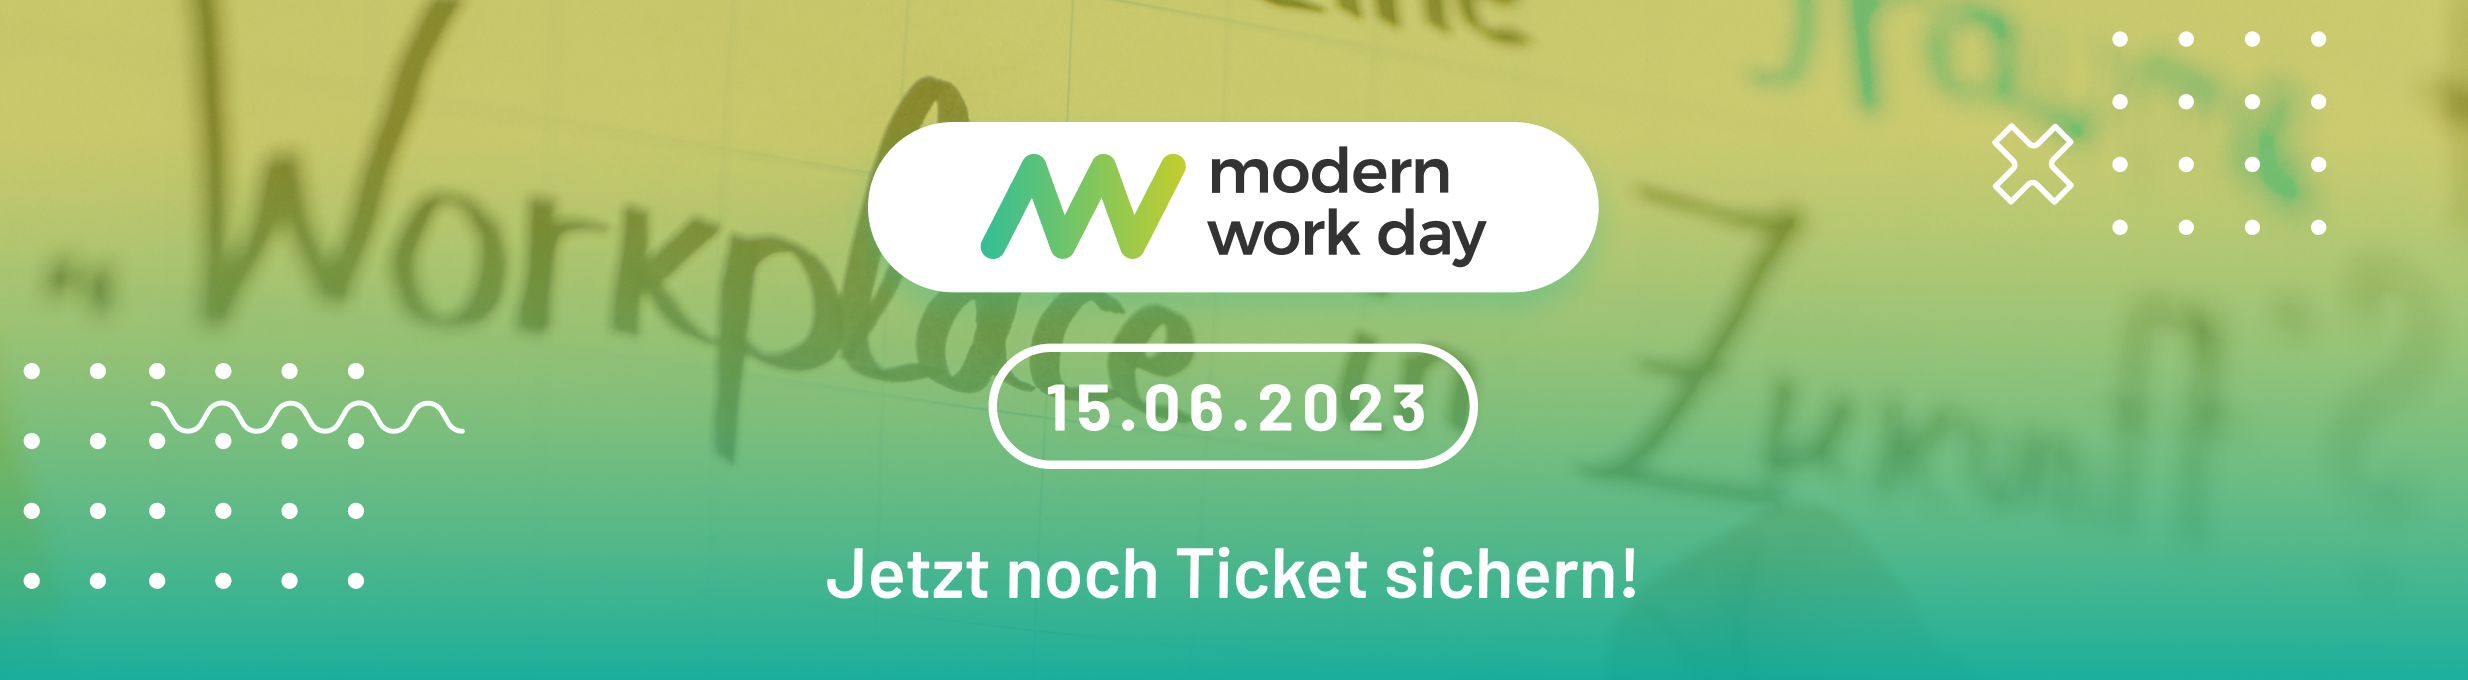 Header Modern Work Day Event - Agenda-Ankündigung